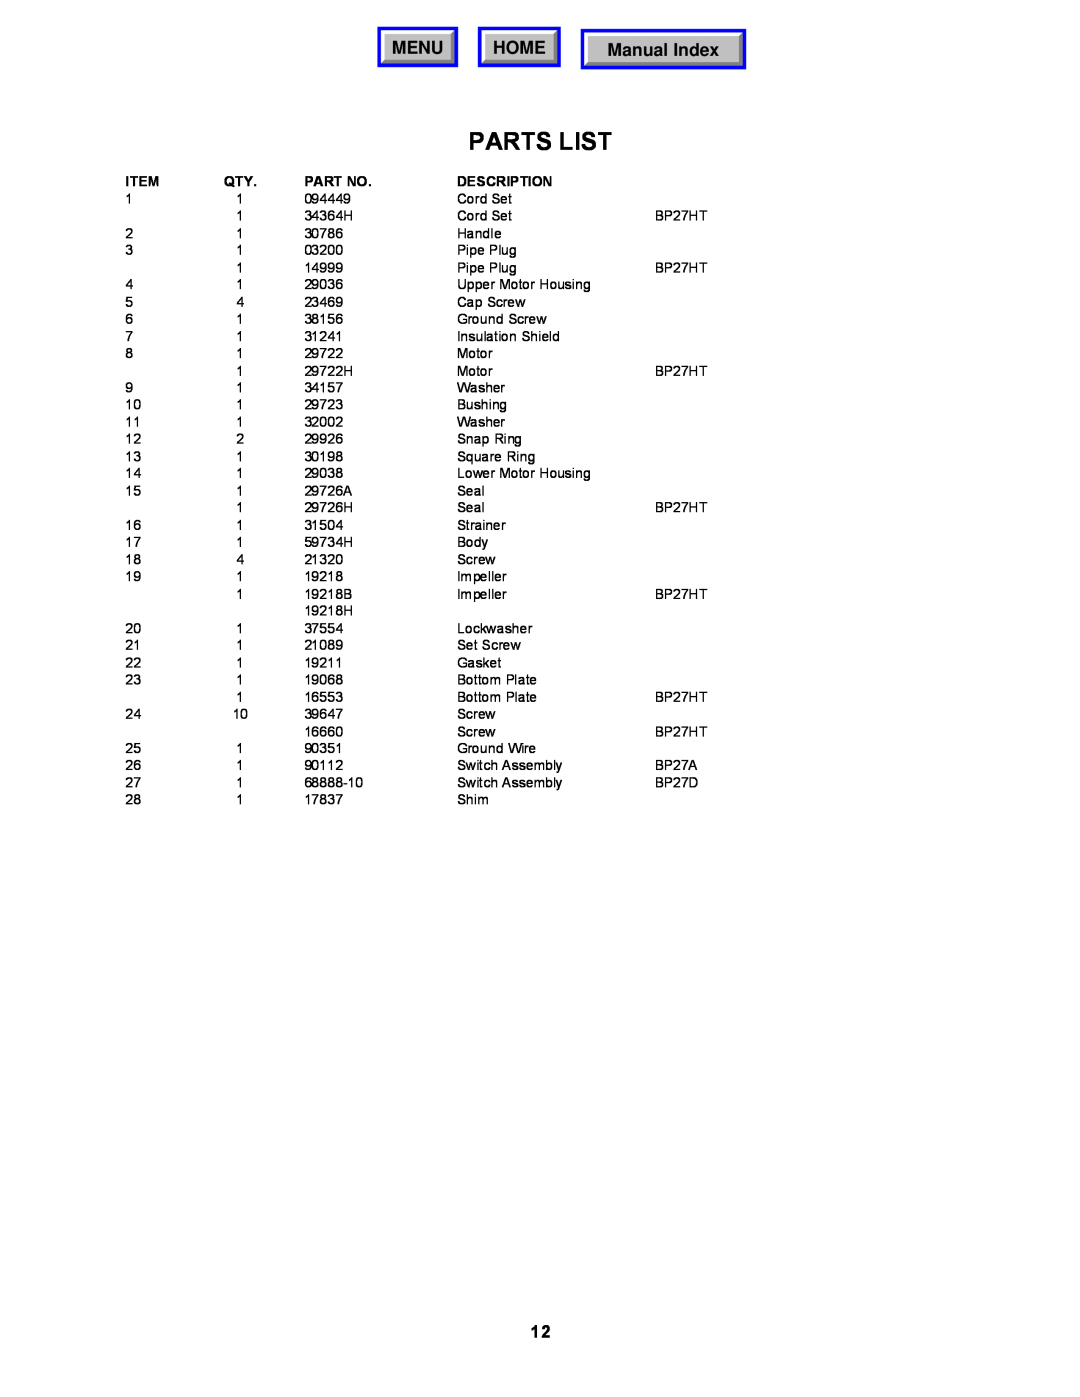 Barnes & Noble BP27D, BP27HT, BP27A operation manual Parts List, Menu, Home, Manual Index, Description 